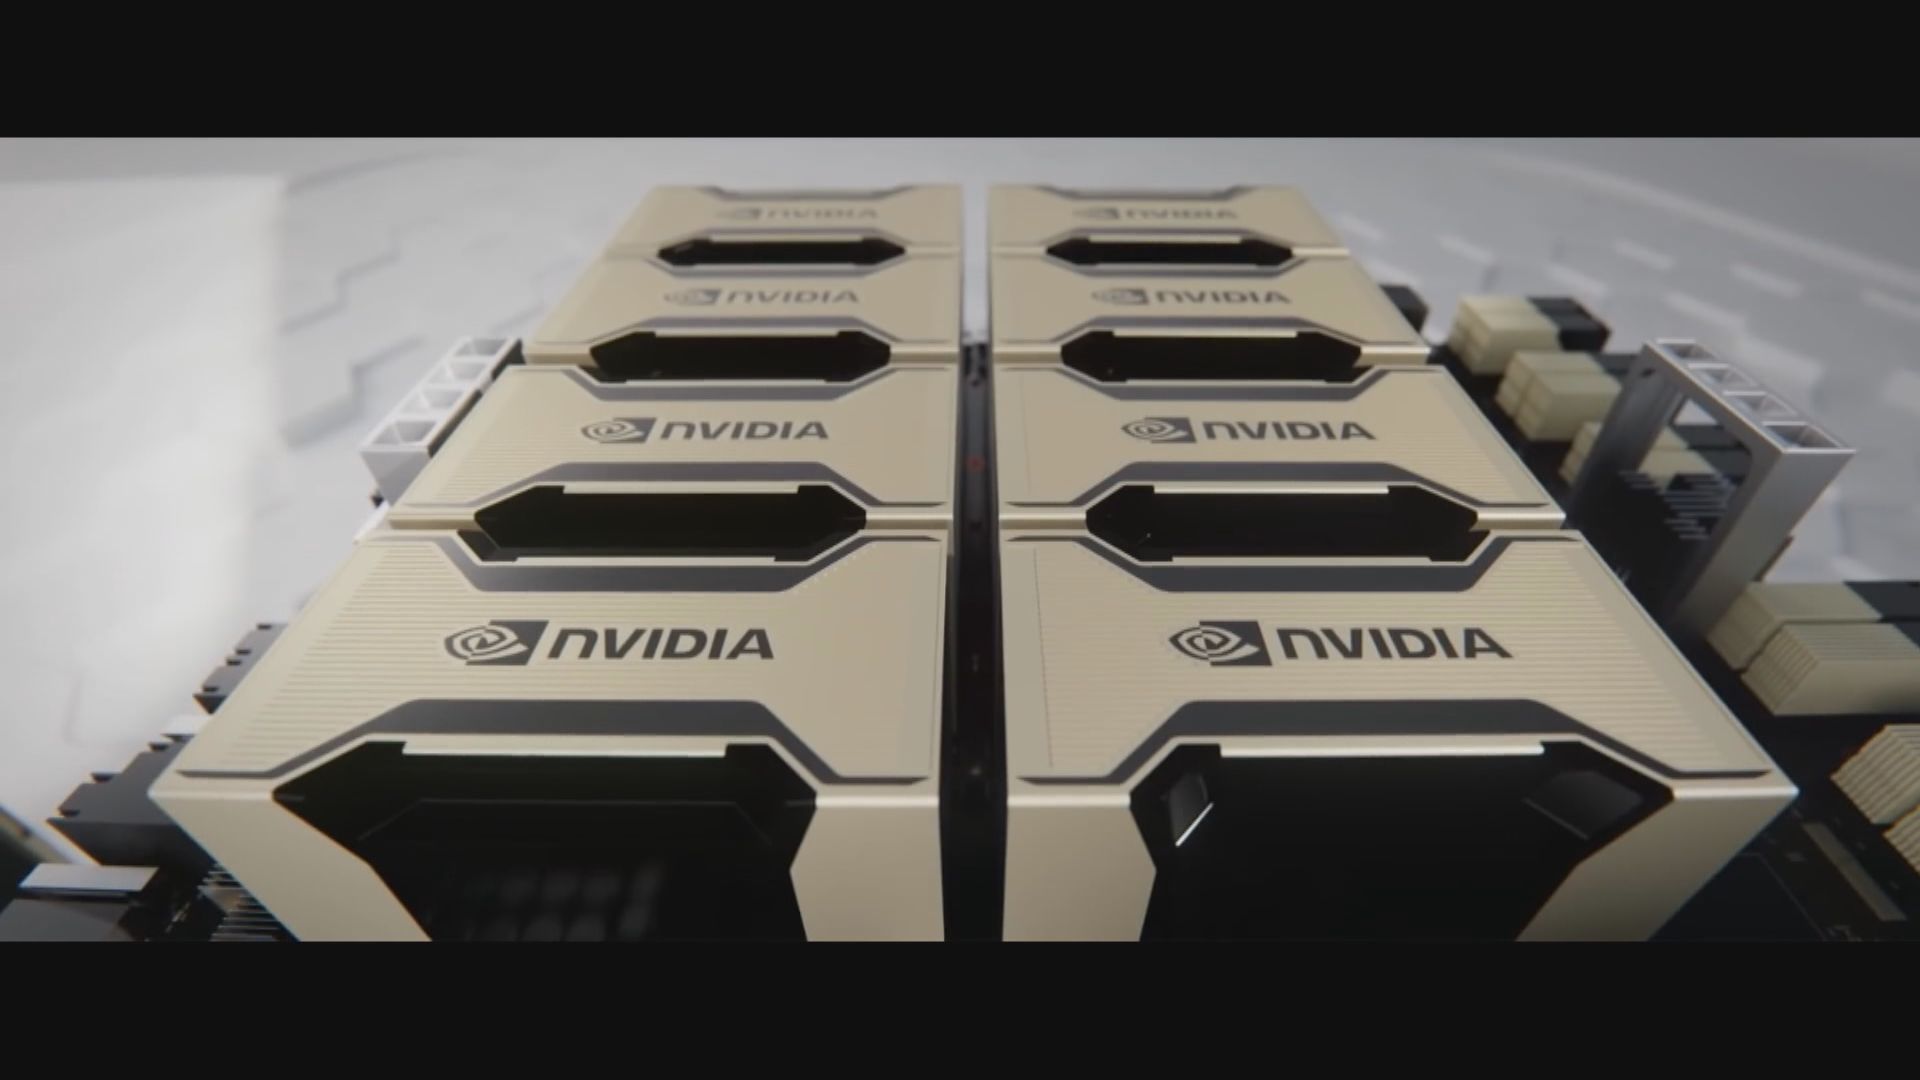 【打芯戰】路透:Nvidia攻華AI晶片H20減價 平華為逾10%